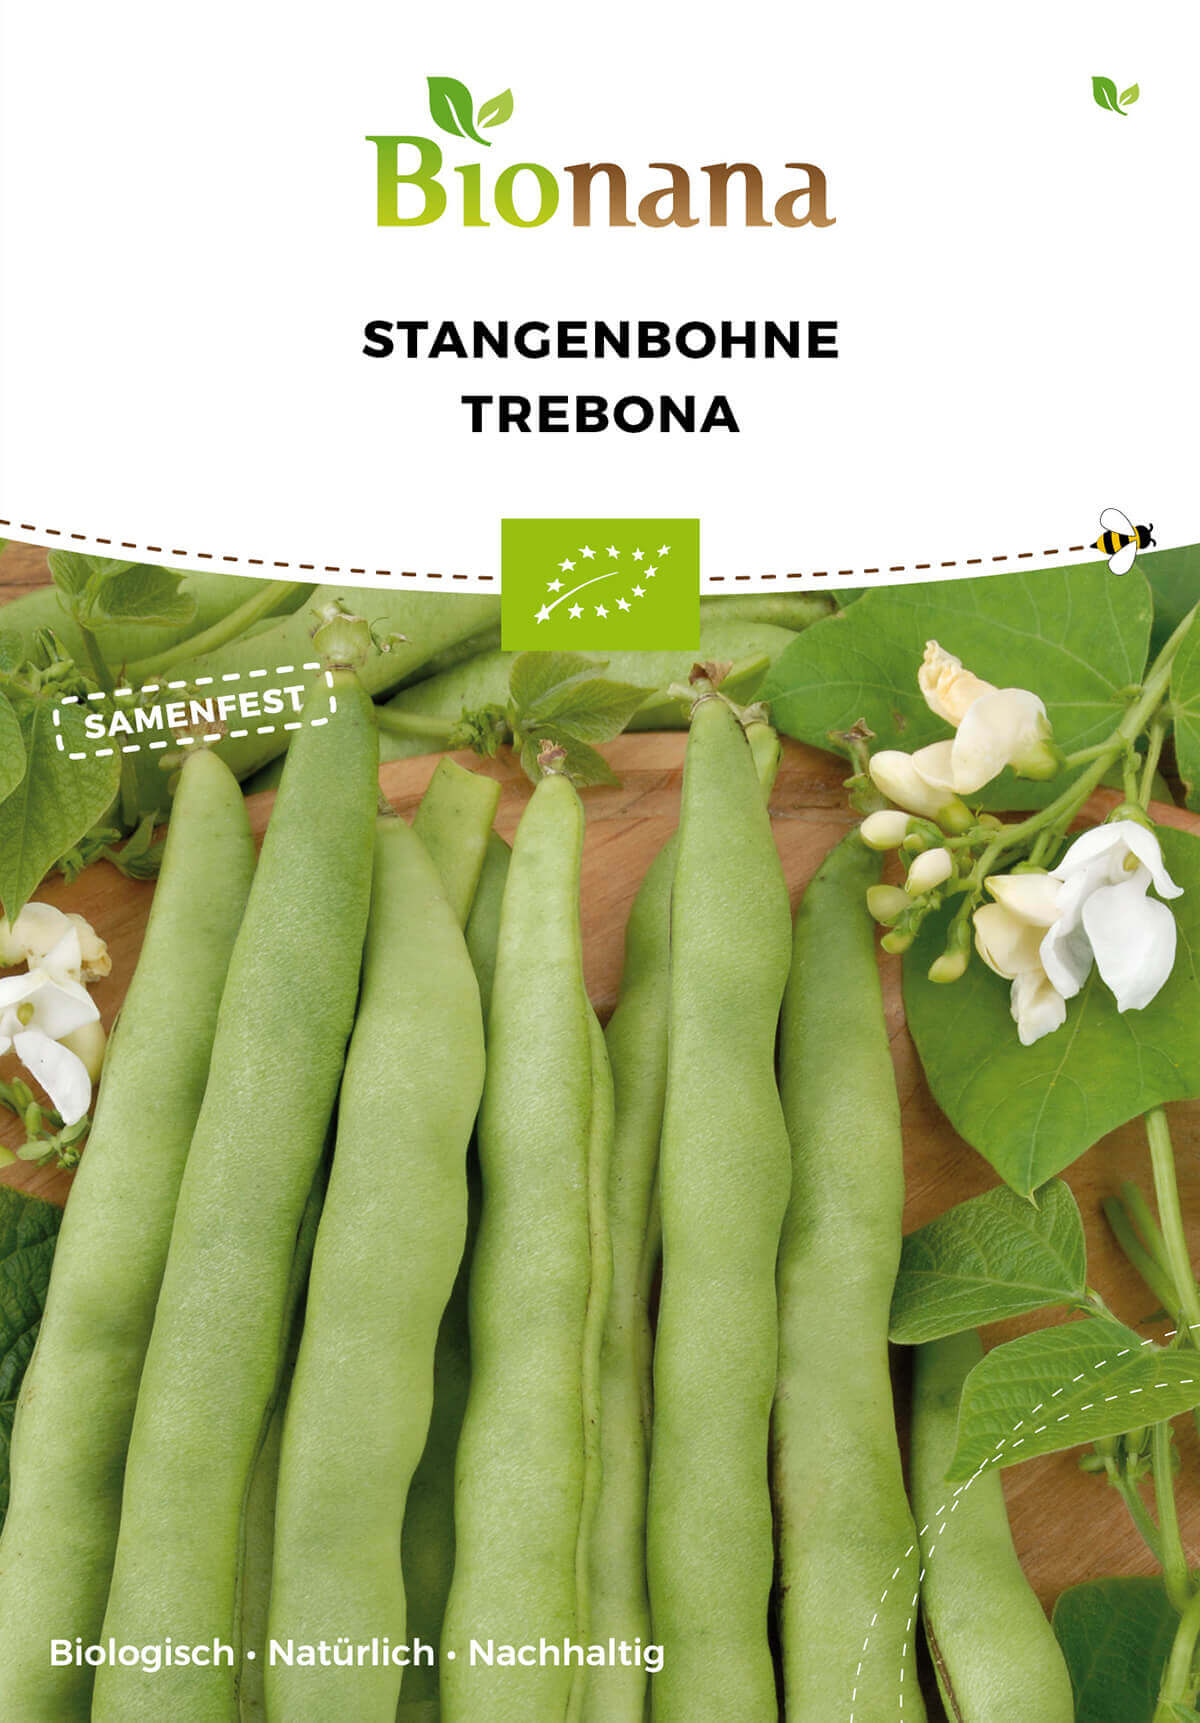 Stangenbohne Trebona | BIO Stangenbohnensamen von Bionana [MHD 12/2023]